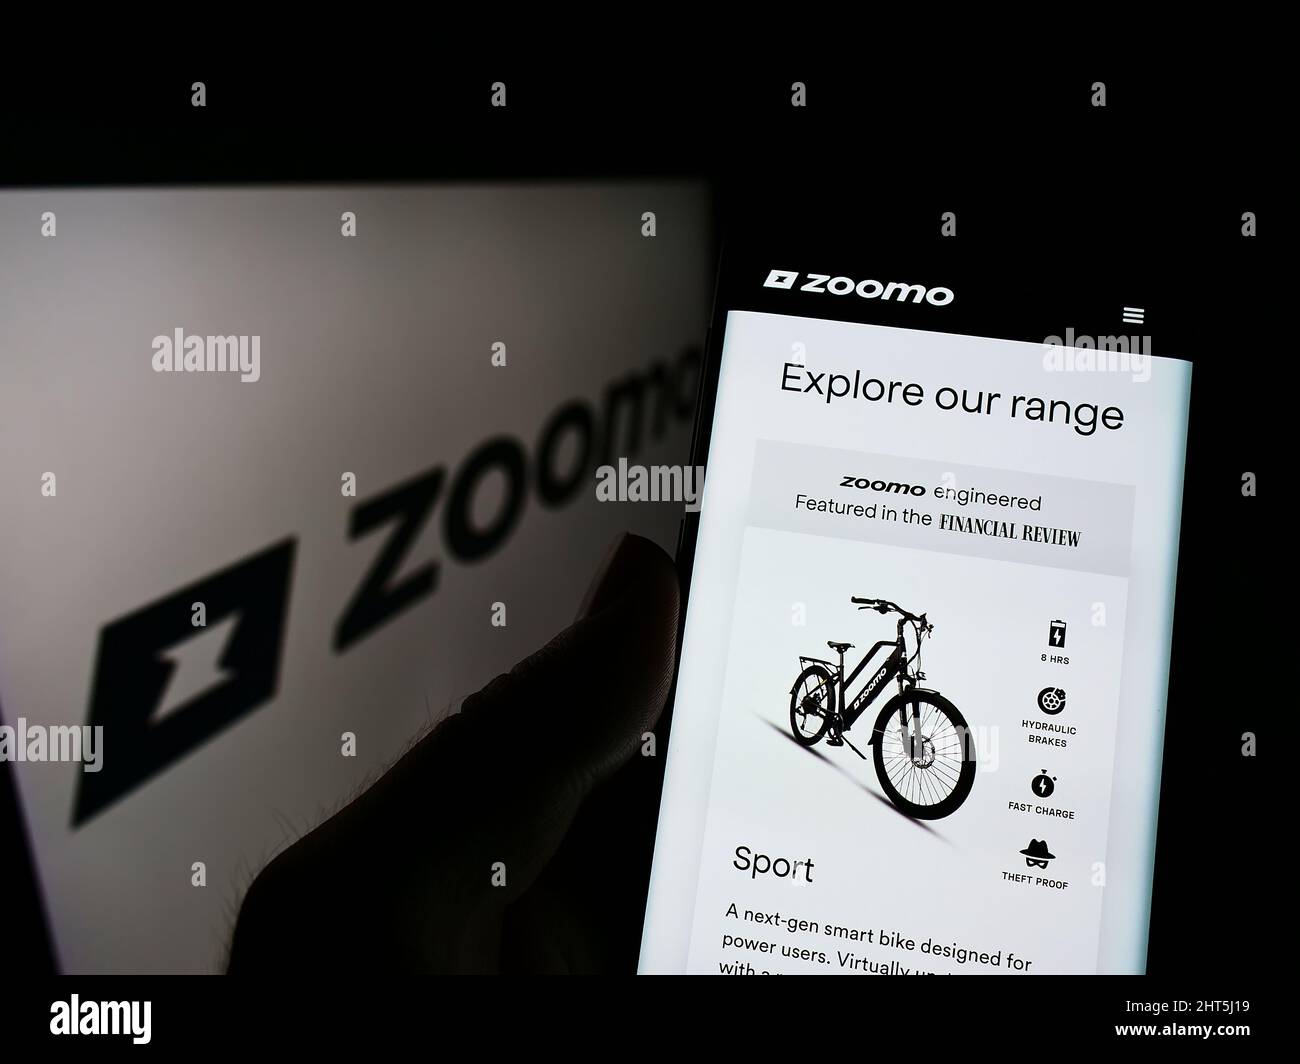 Persona che tiene il cellulare con pagina web della società di biciclette elettriche Bolt Bikes (Zoomo) sullo schermo di fronte al logo. Concentrarsi sul centro del display del telefono. Foto Stock